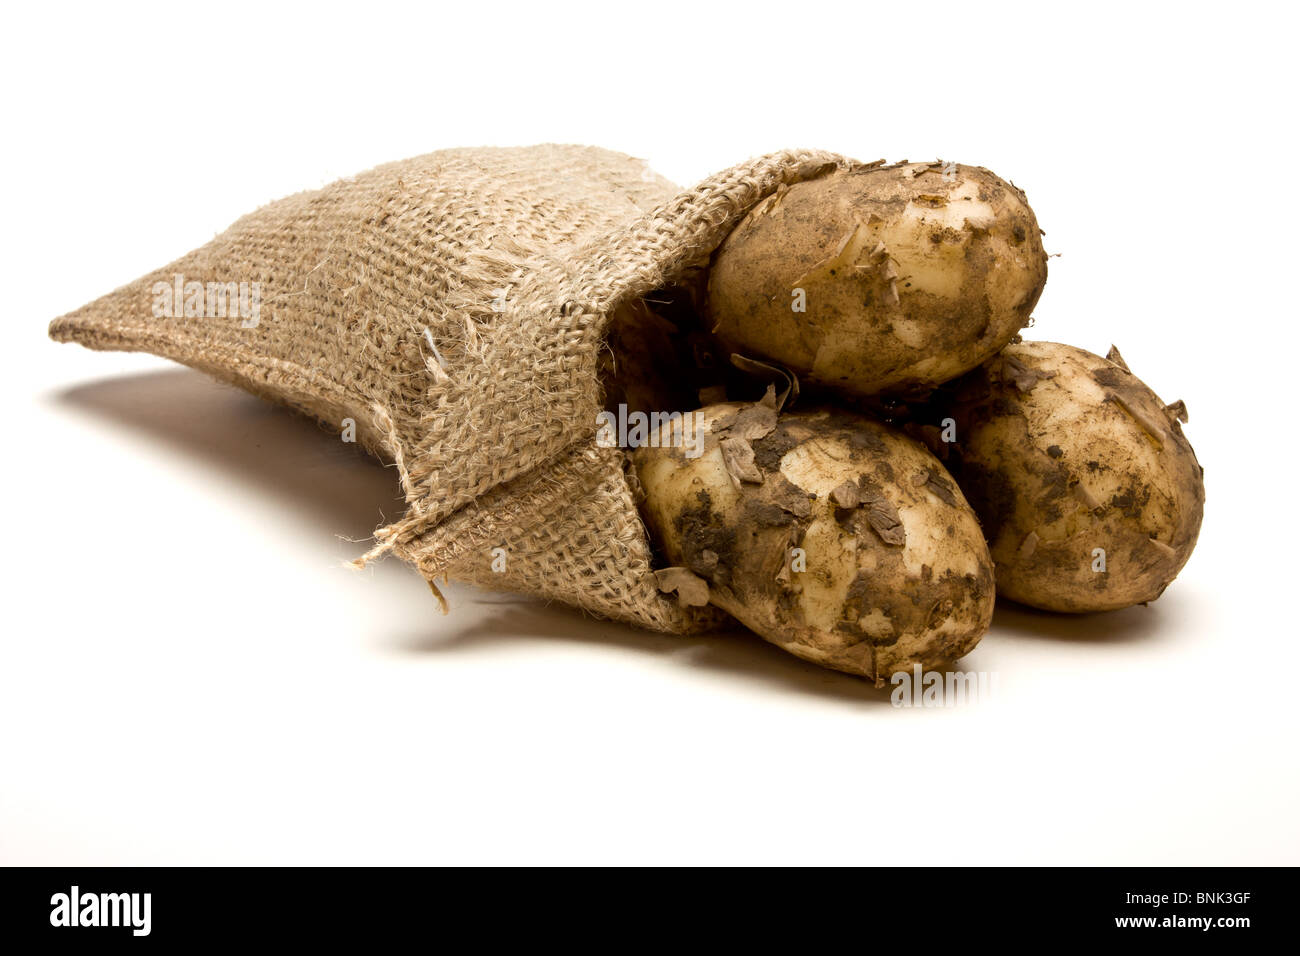 Sac de pommes de terre nouvelles à partir de la perspective peu isolés contre fond blanc. Banque D'Images